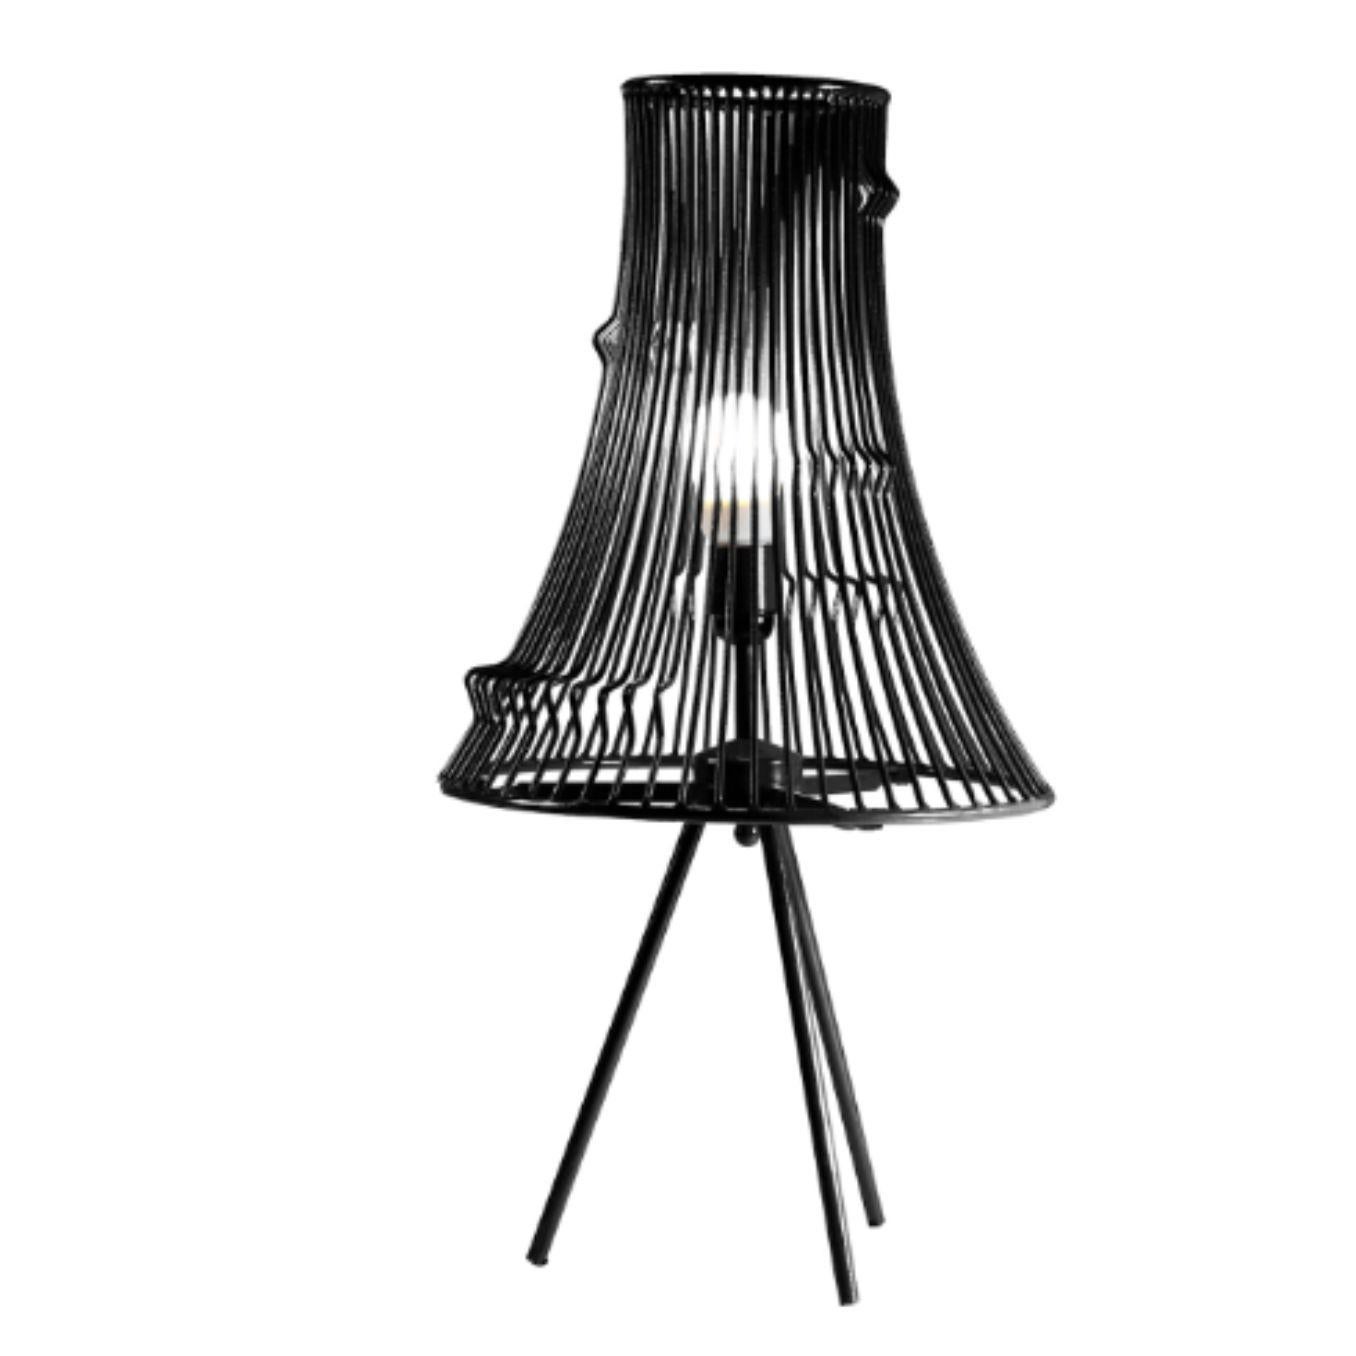 Lampe de table extrudée noire par DOOQ.
Dimensions : L 34x D 34 x H 70 cm.
Matériaux : métal laqué.
Disponible également en différentes couleurs et matériaux. 

Informations :
230V/50Hz
E27/1x10W LED
120V/60Hz
E26/1x7W LED
ampoule non